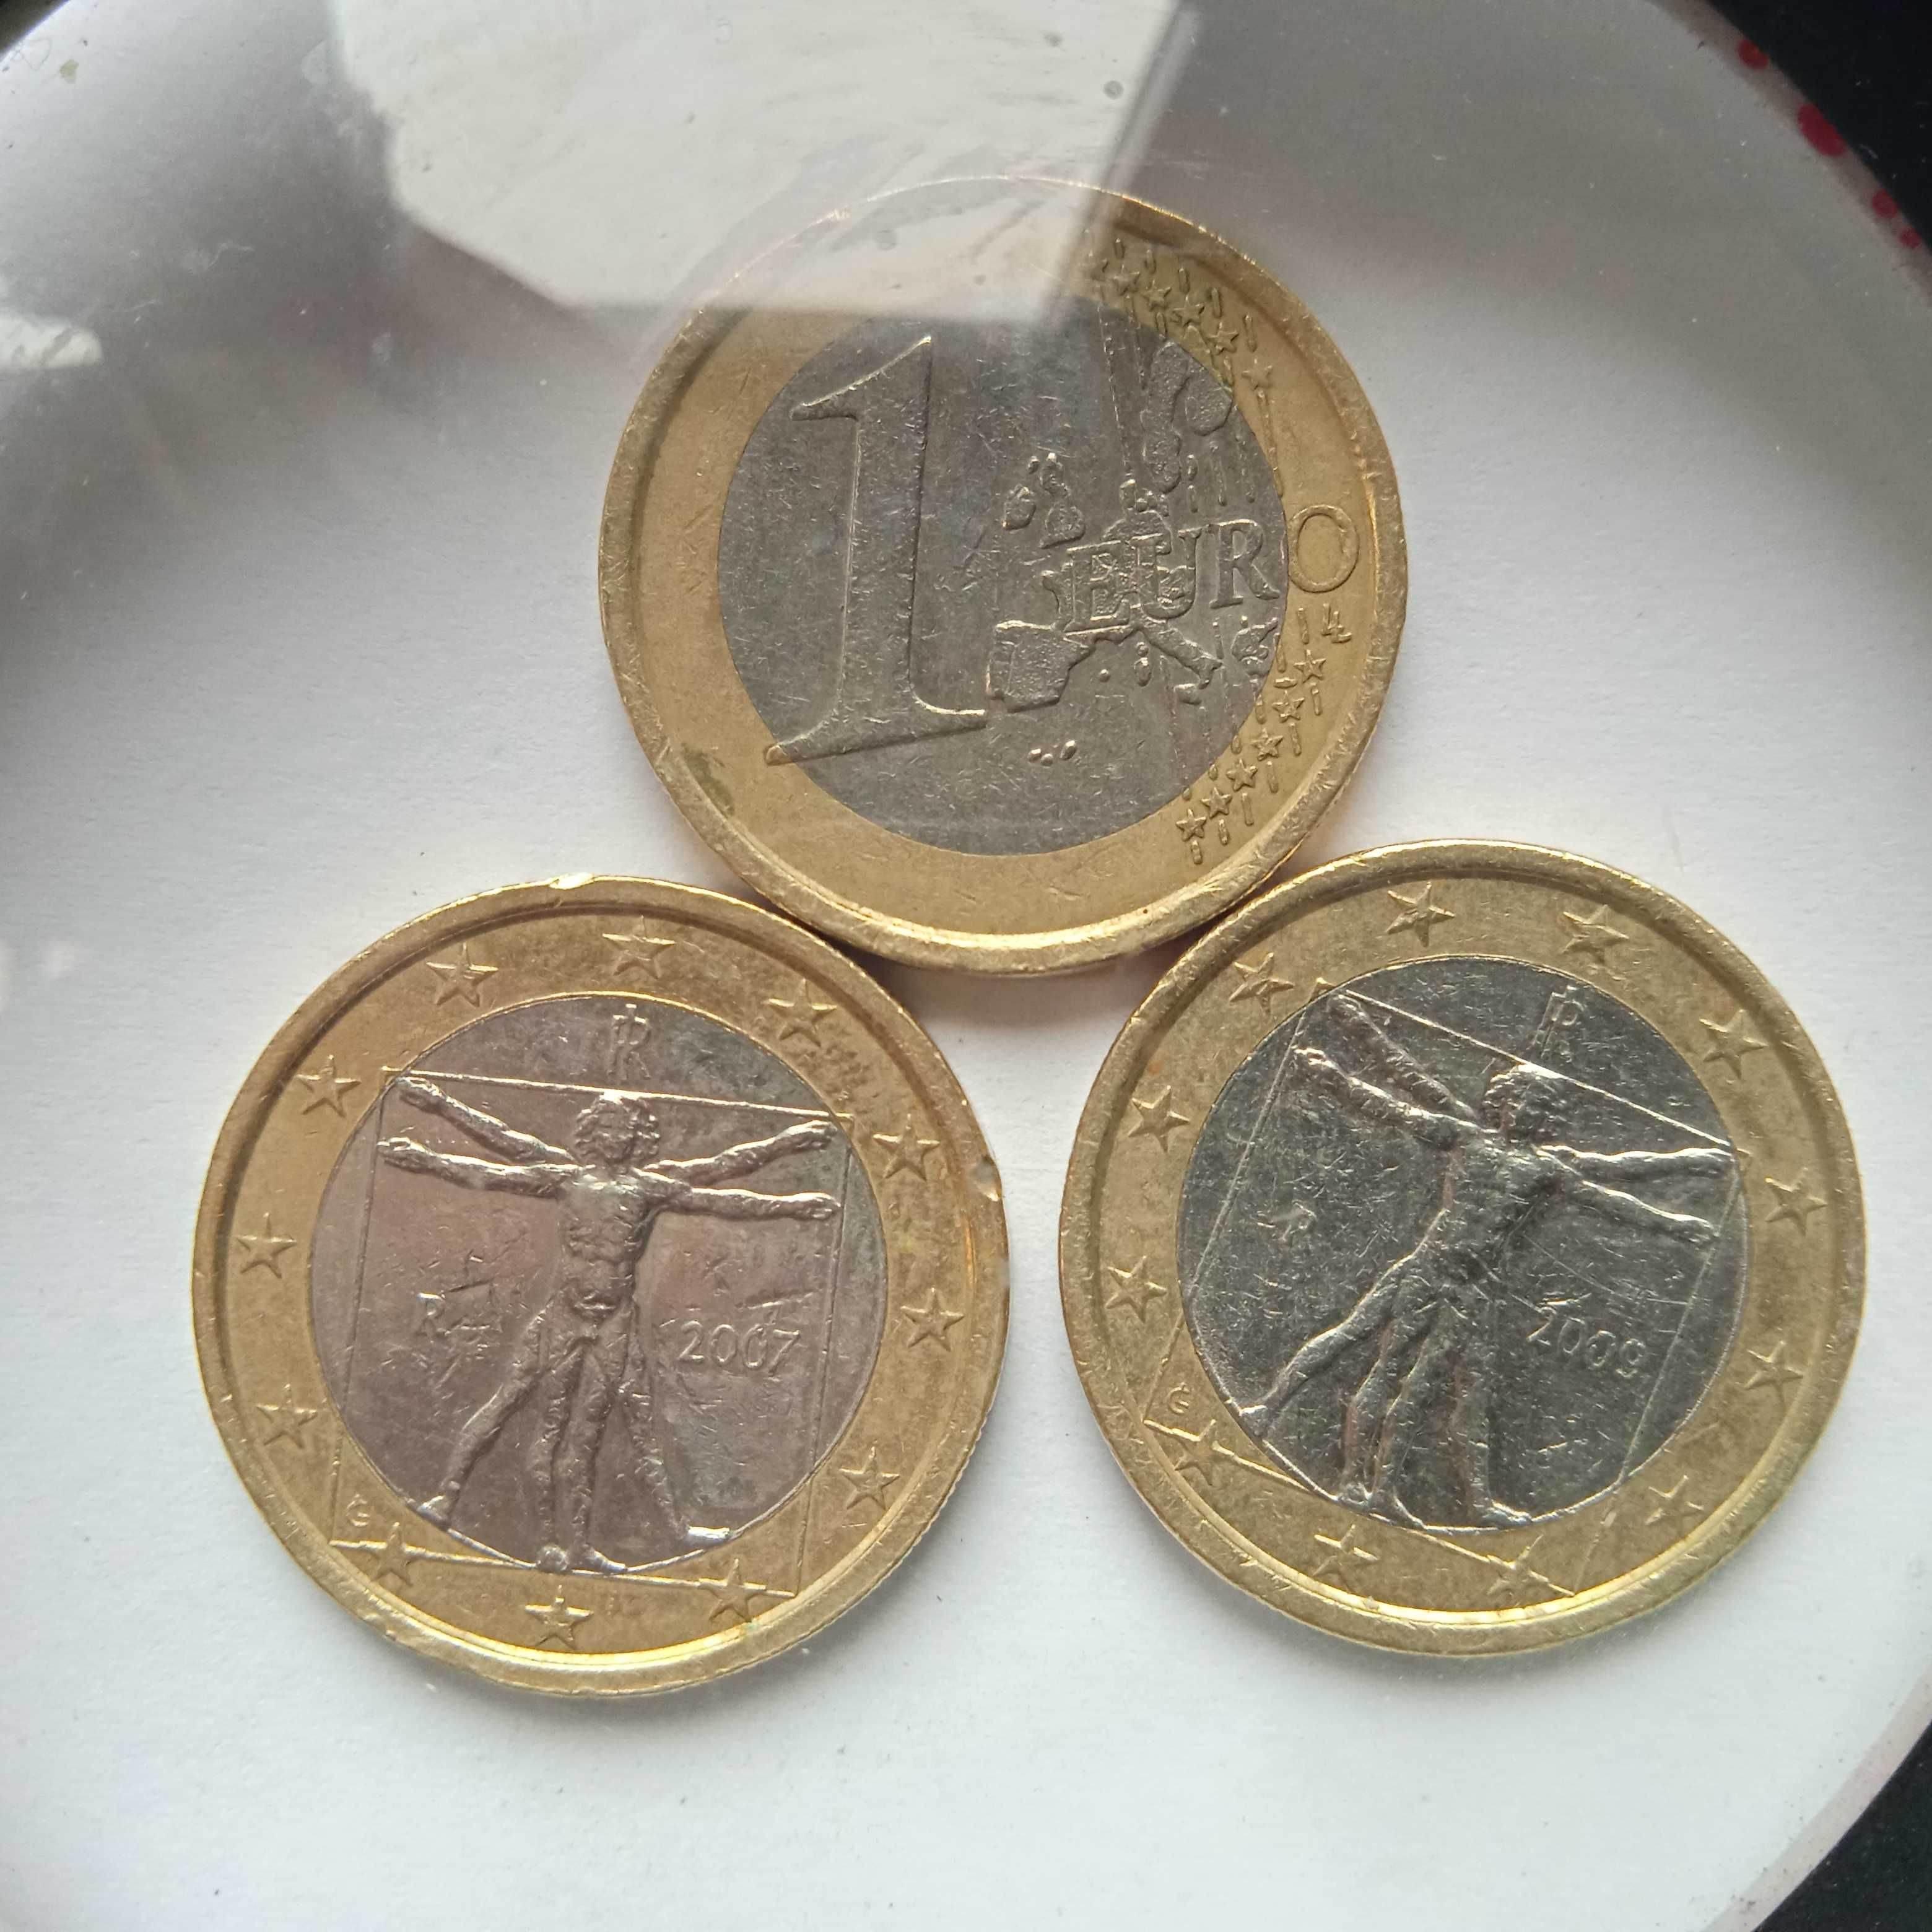 Vendo moedas de um euro de Itália